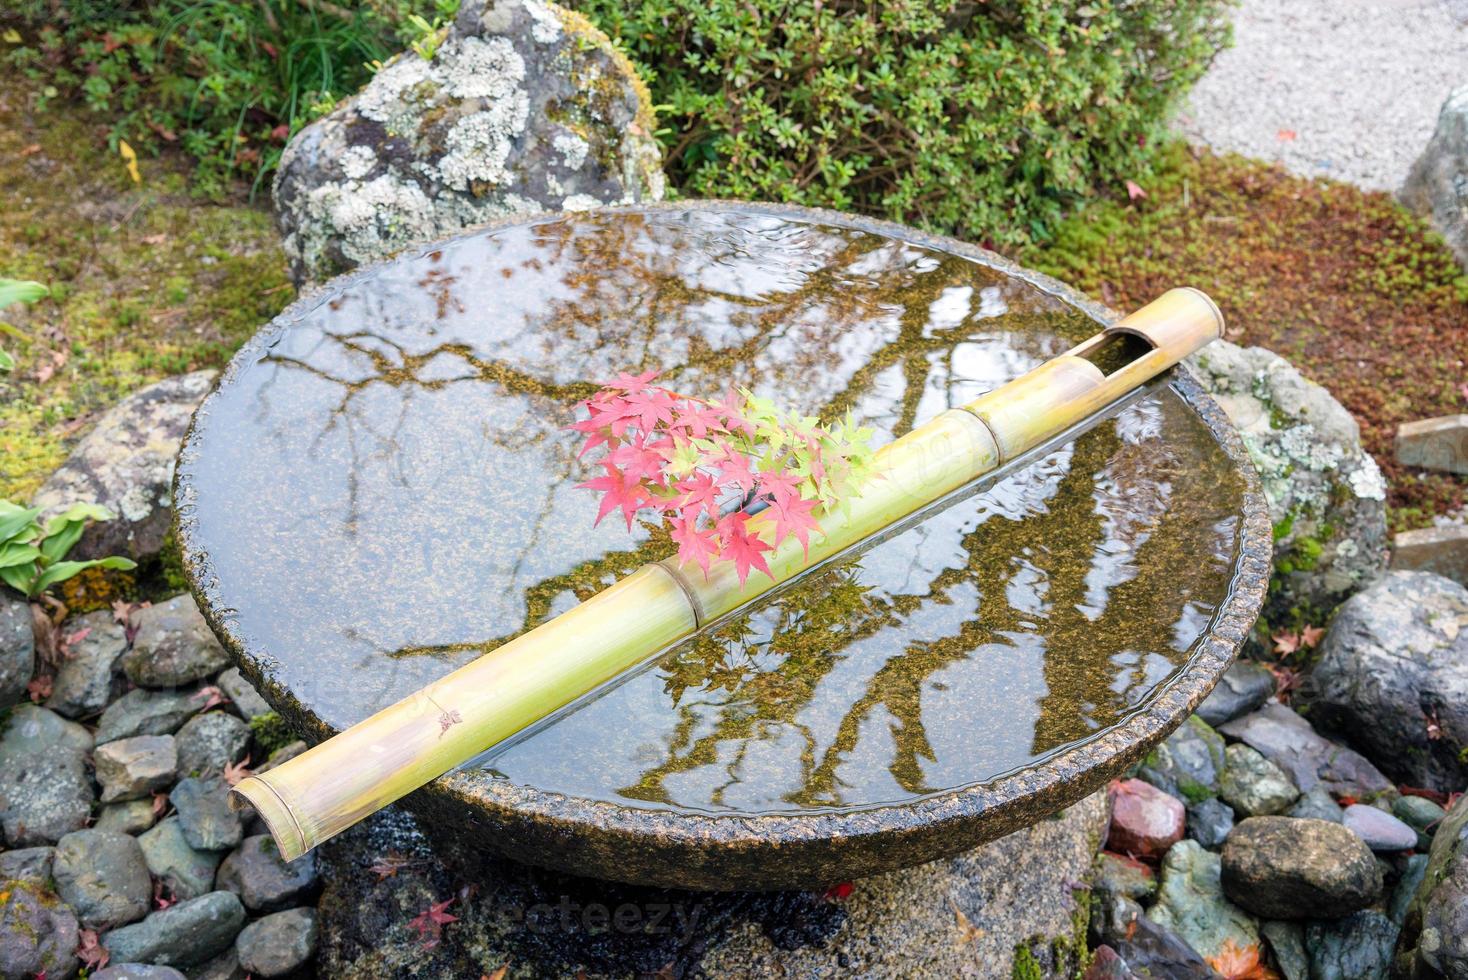 Japanischer Zen-Garten für Entspannung Balance und Harmonie Spiritualität oder Wellness in Kyoto, Japan foto